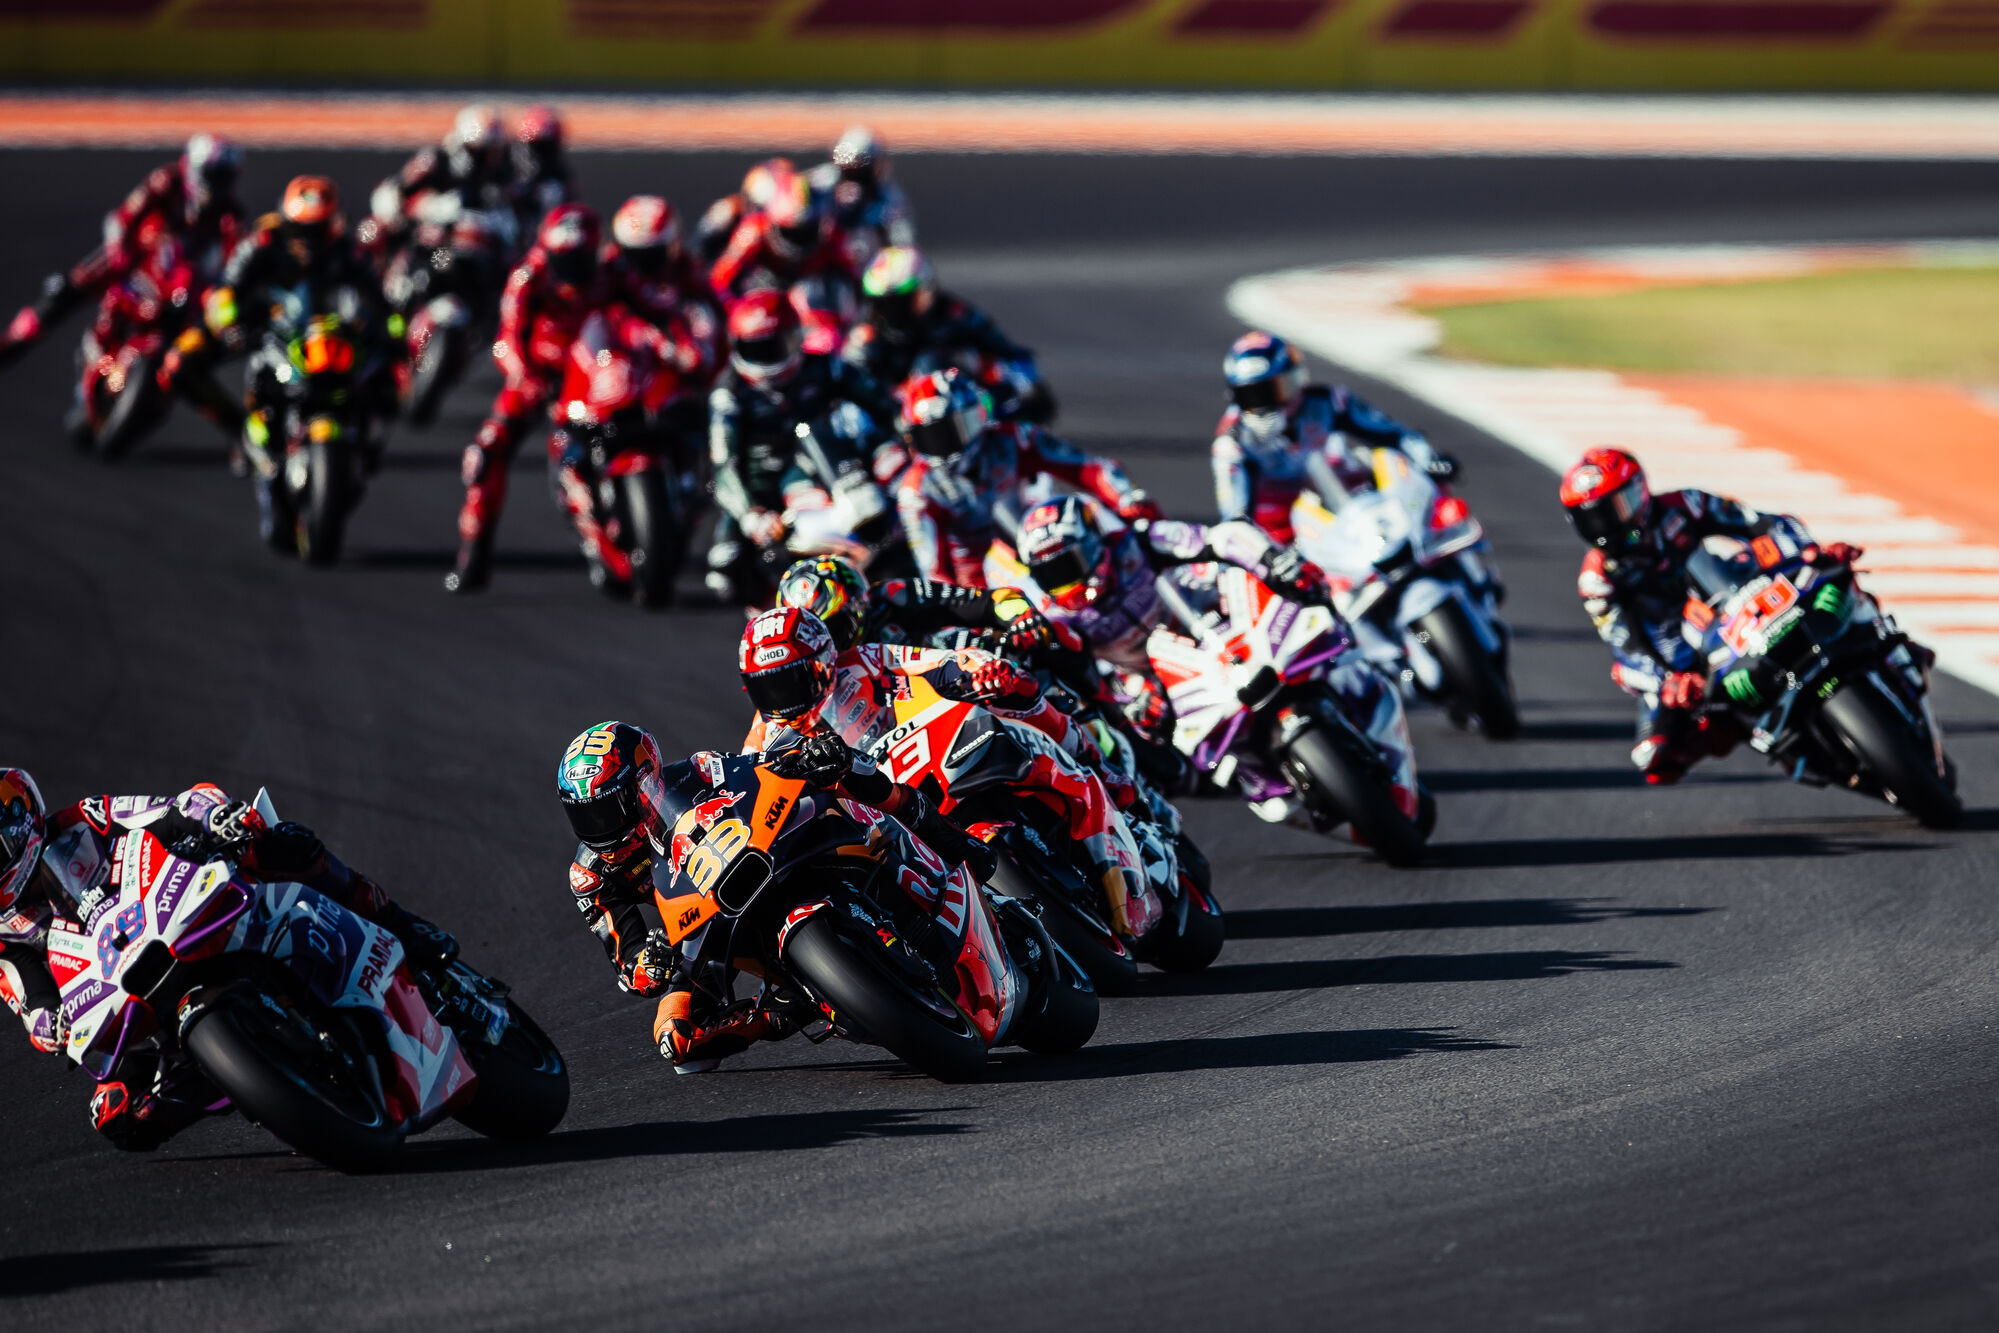 MotoGP divulga novo formato do fim de semana para 2023 - Notícia de MotoGP  - Grande Prêmio